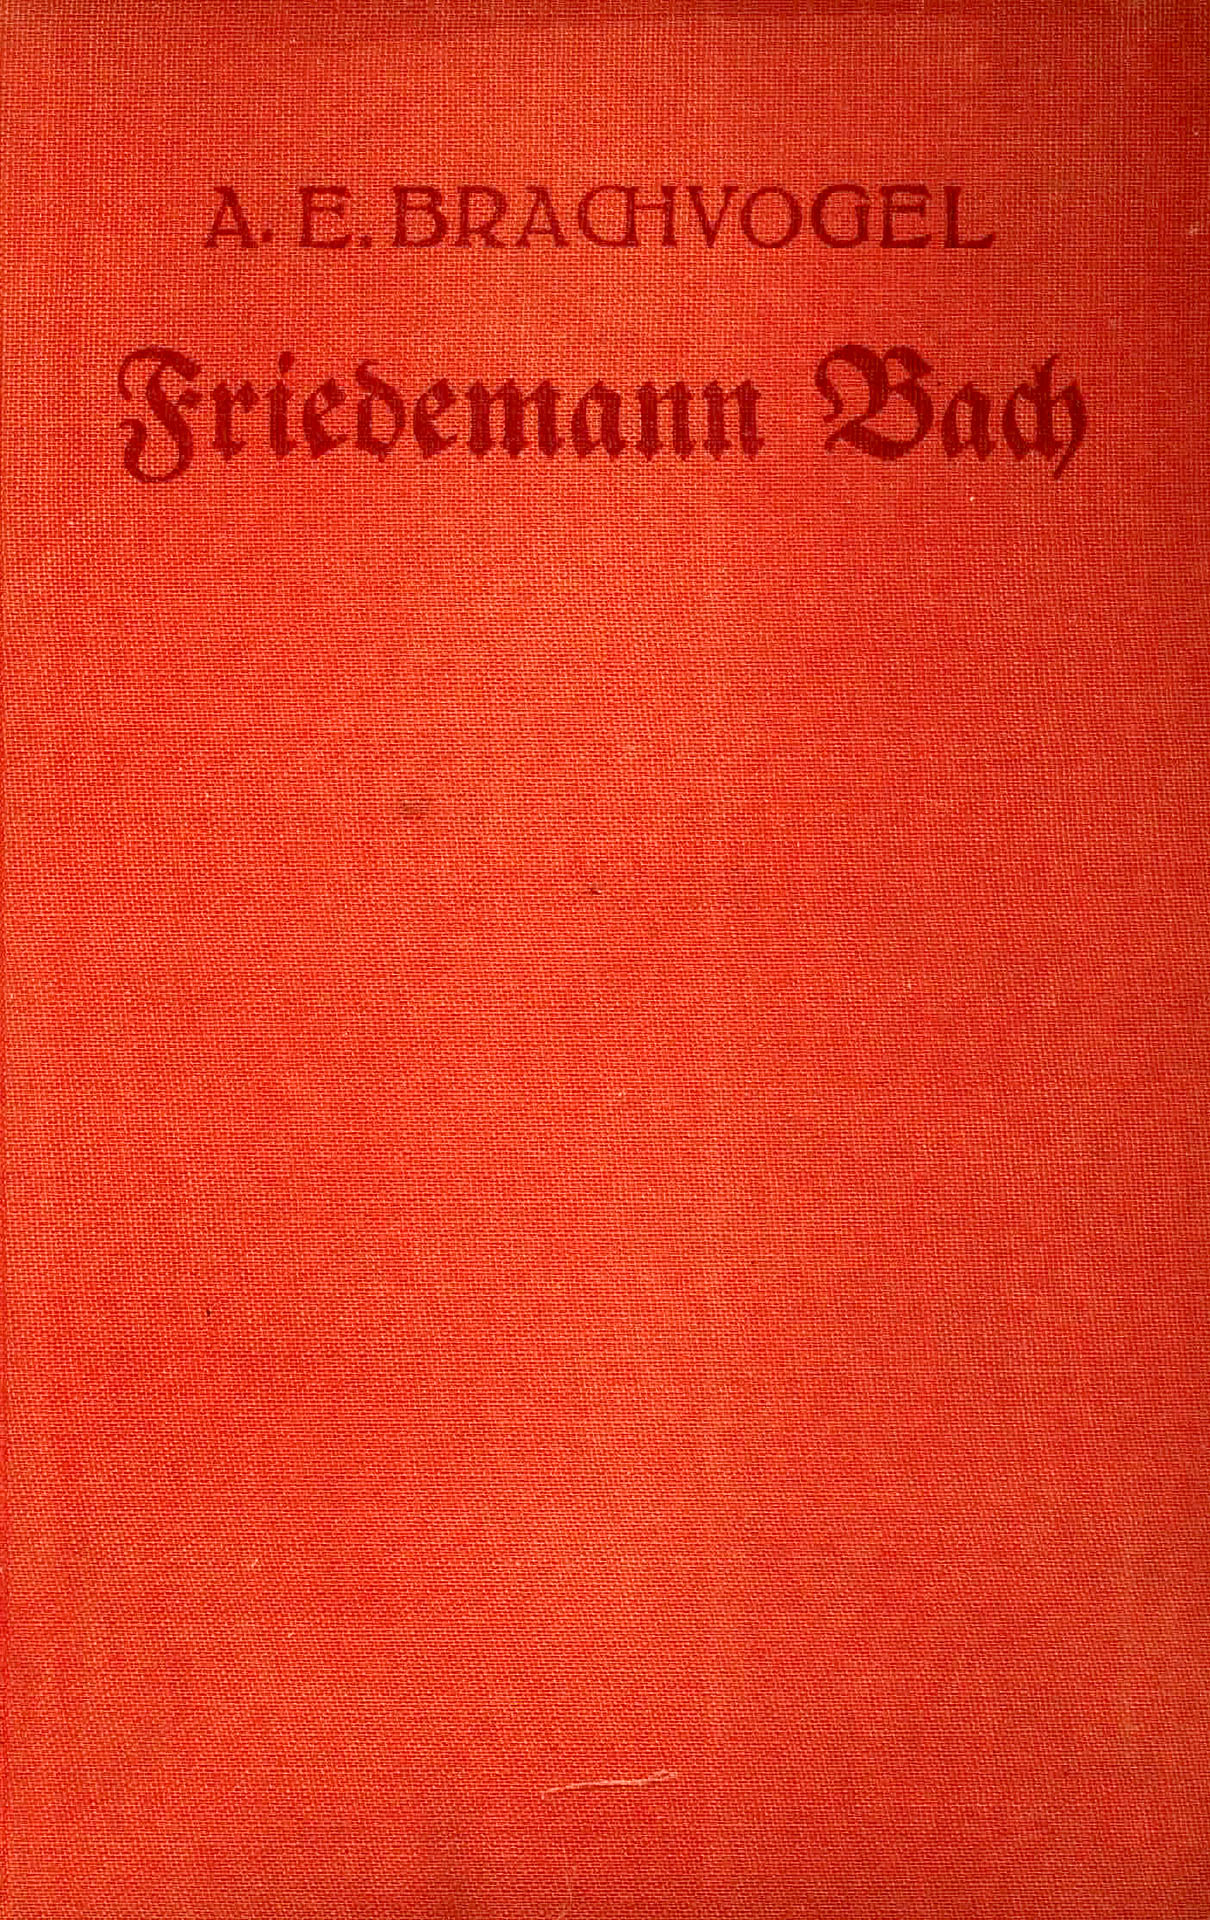 Friedemann Bach - Brachvogel, U. G.